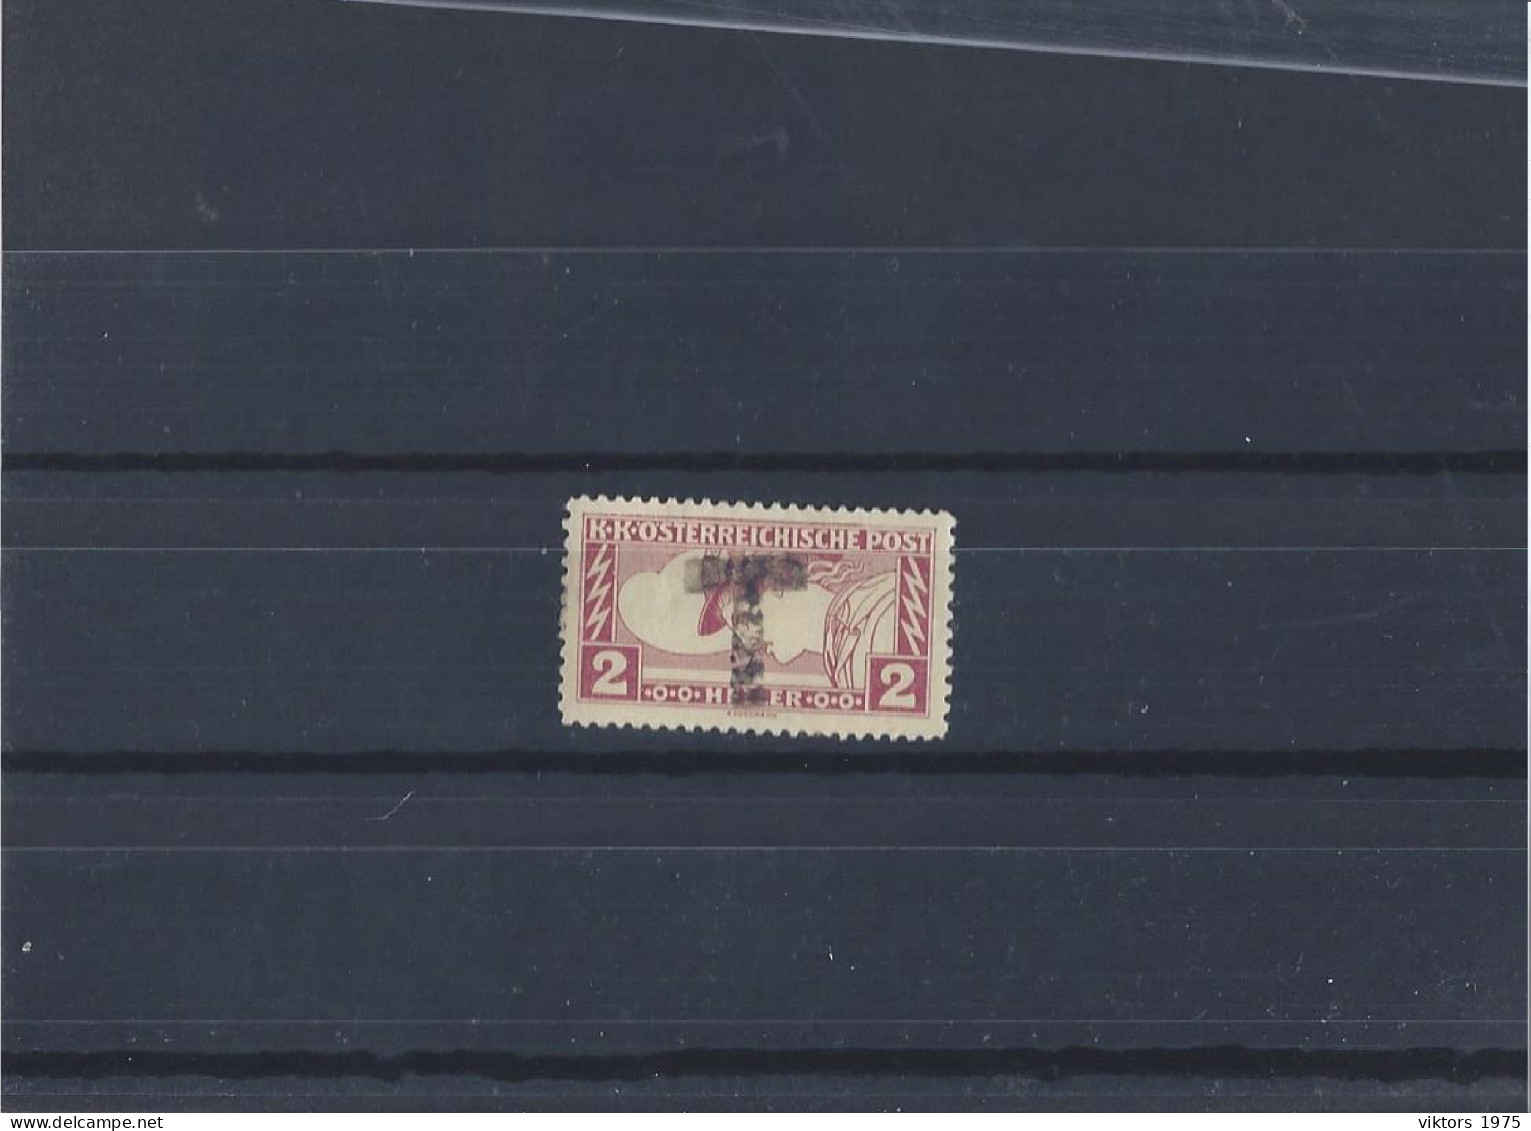 Used Stamp Nr.219 In MICHEL Catalog - Usati